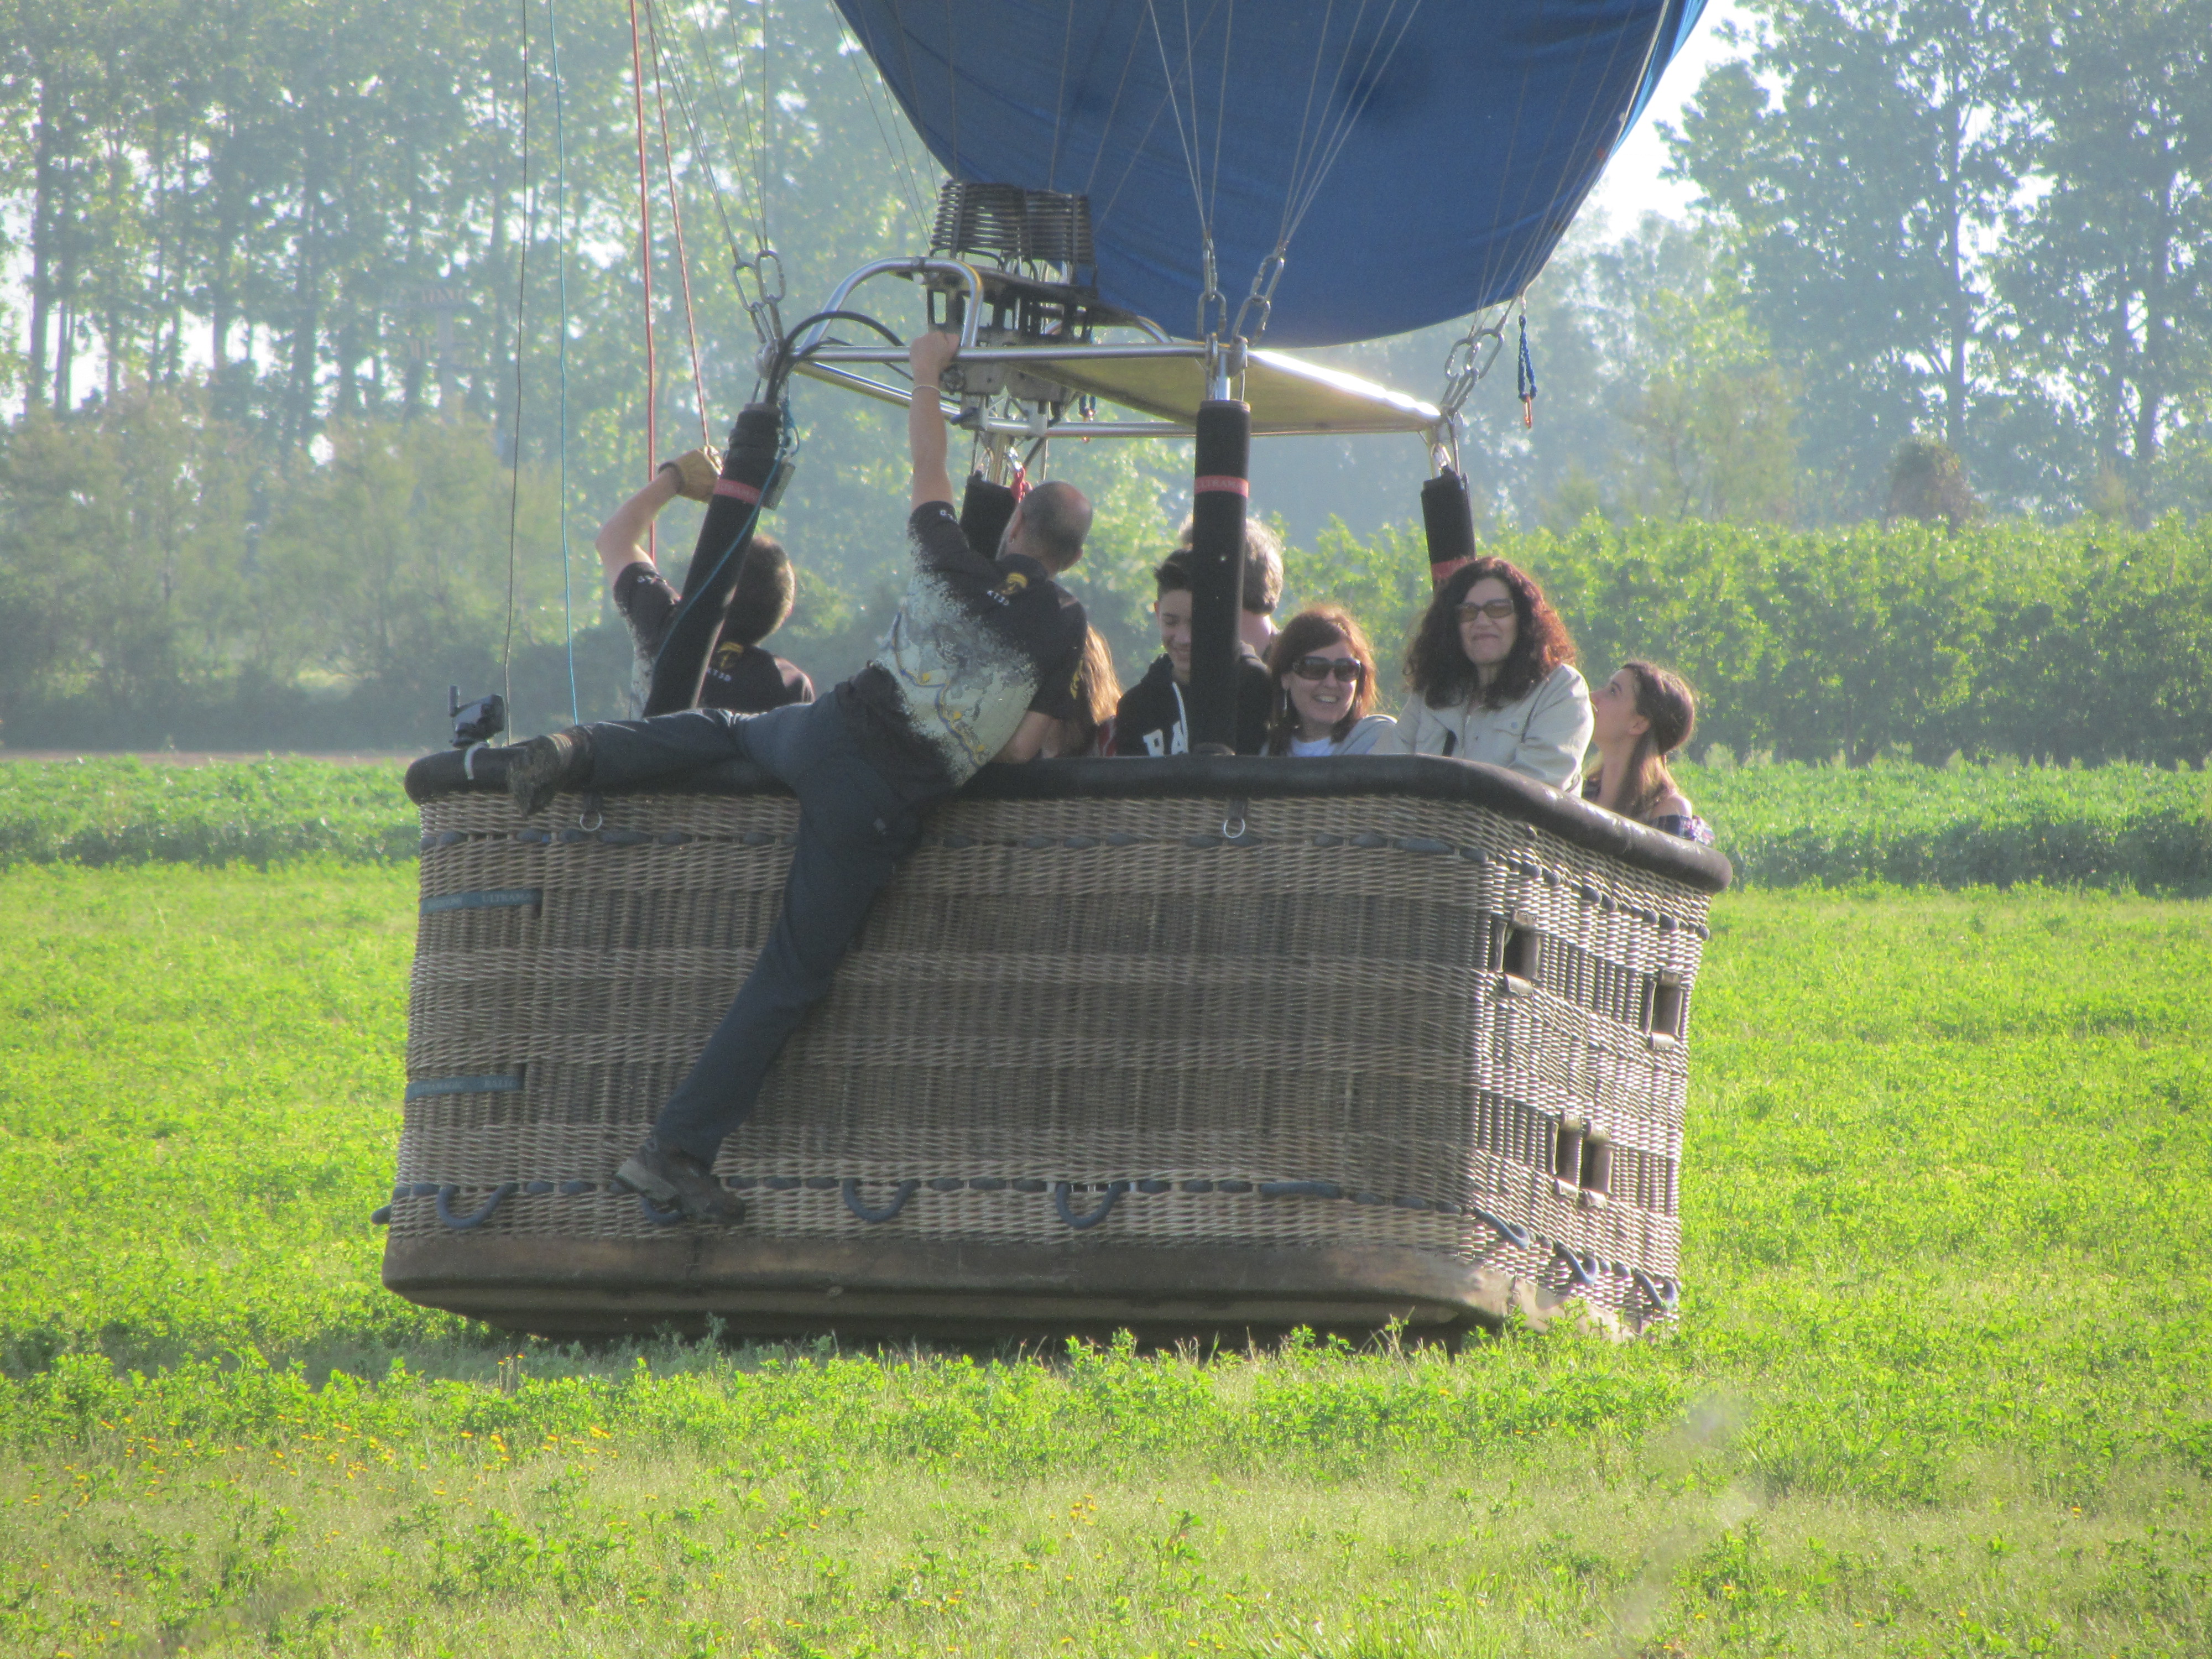 Balloon landing in a field